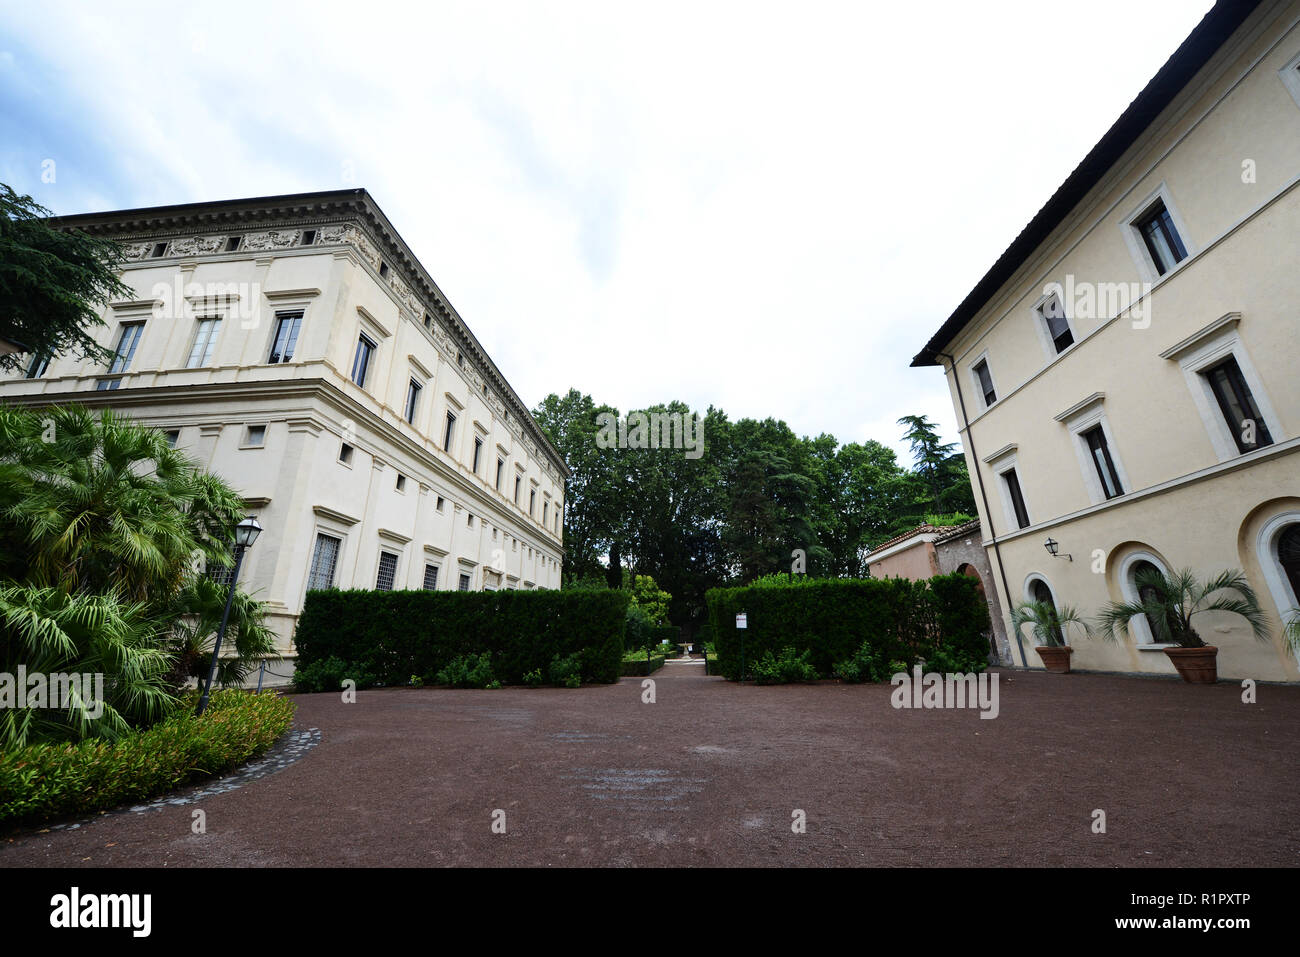 Villa Farnesina in Rome Stock Photo